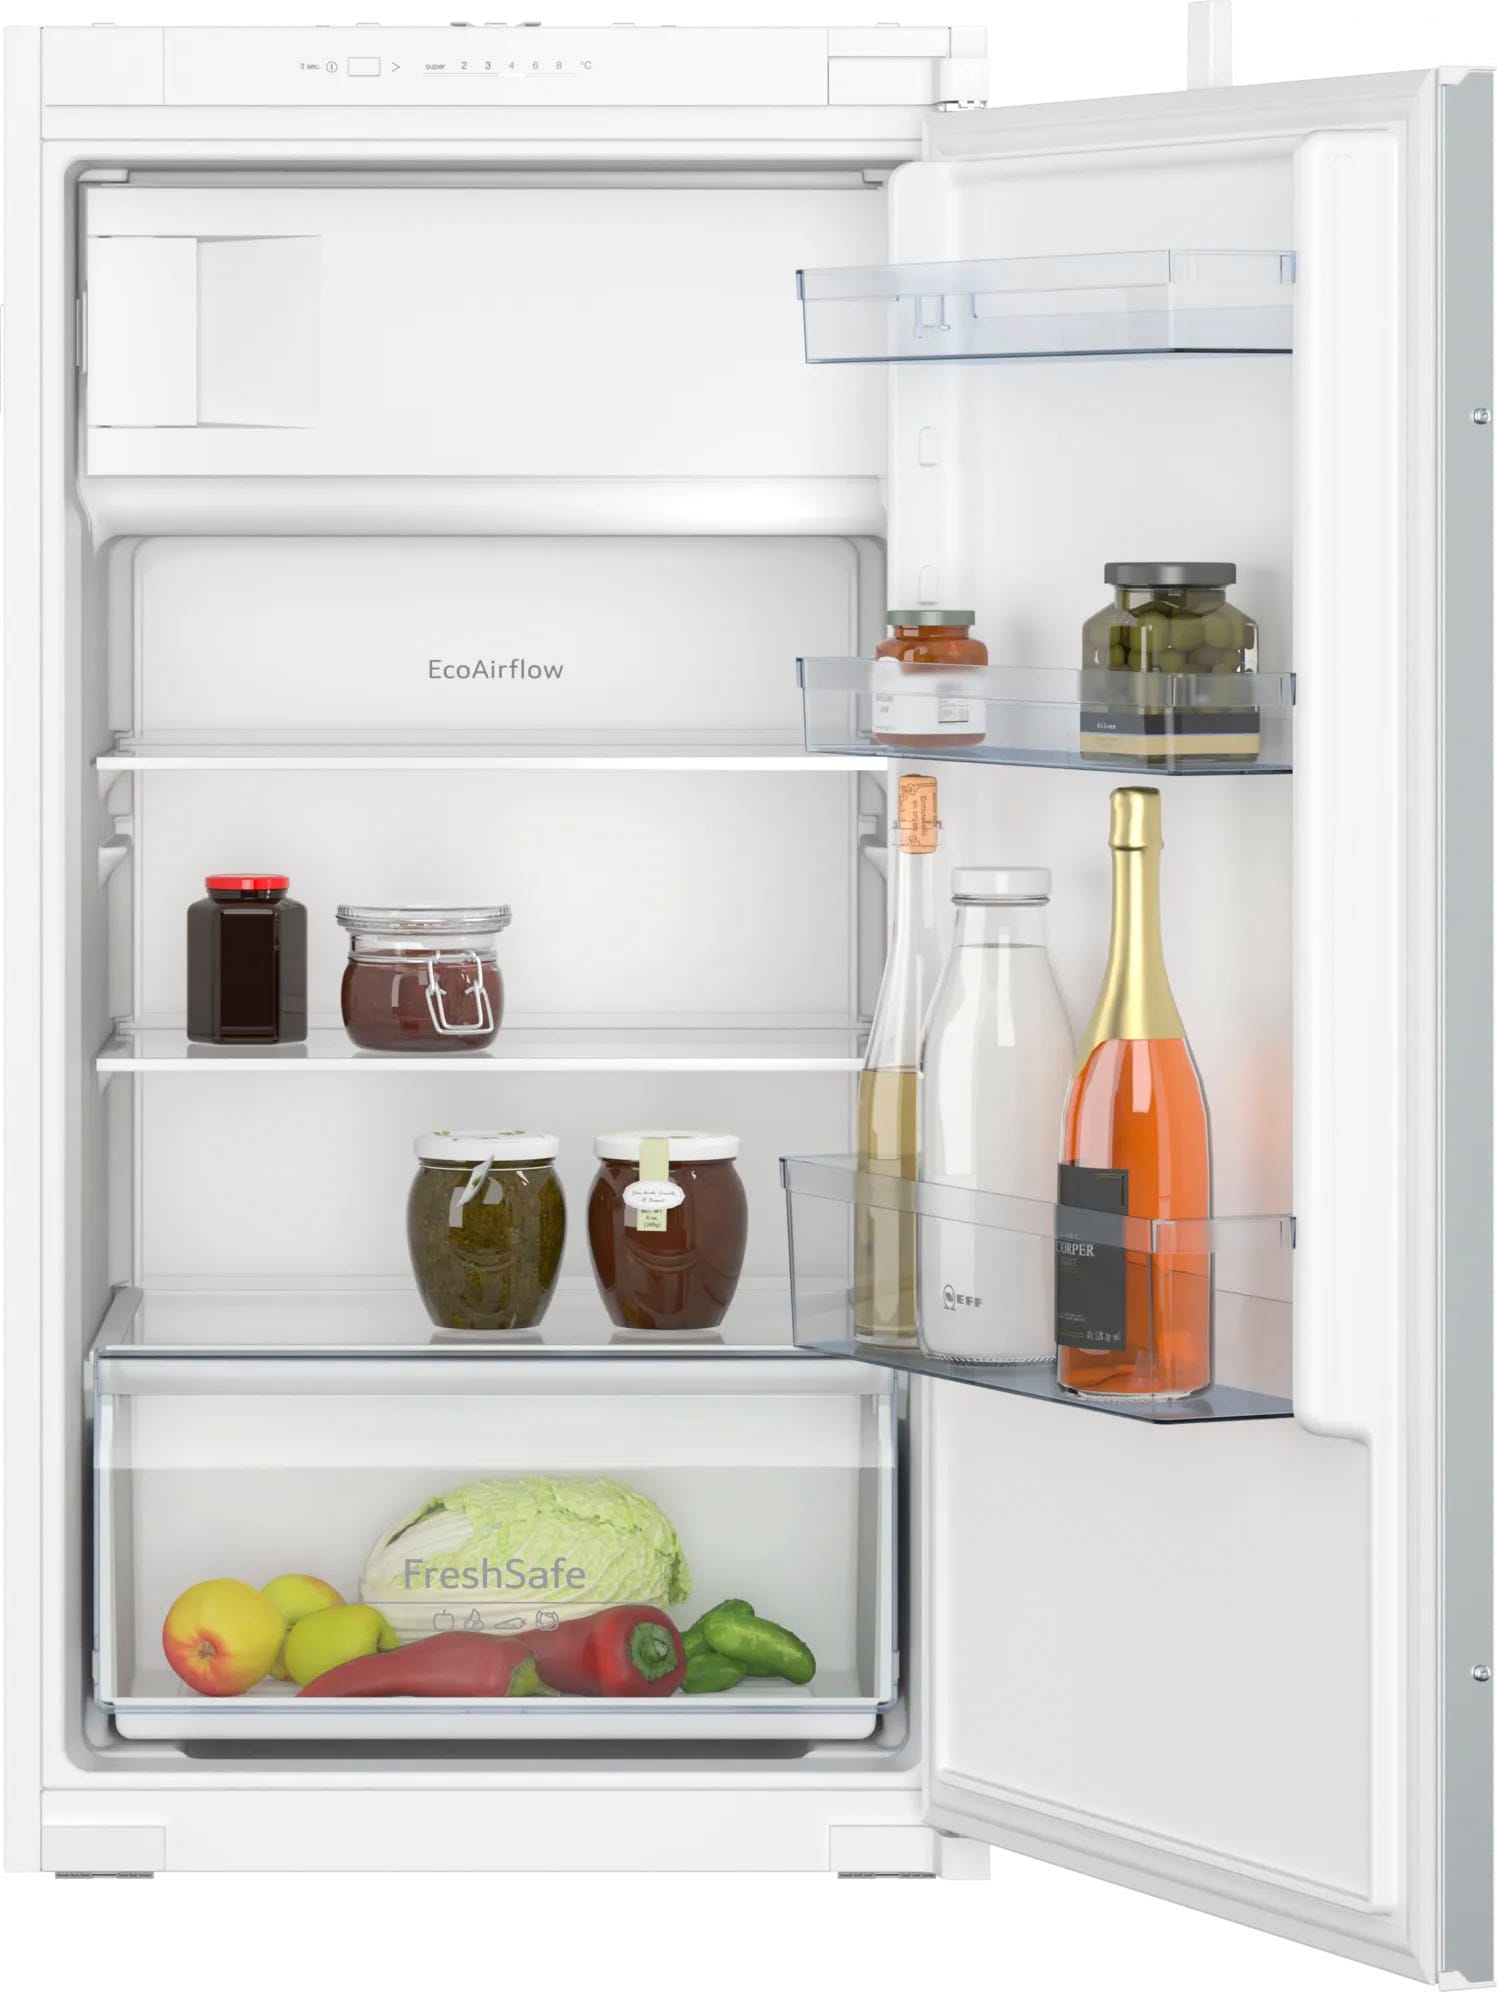 NEFF Kühlschränke flexibler OTTO Teilzahlung mit bei